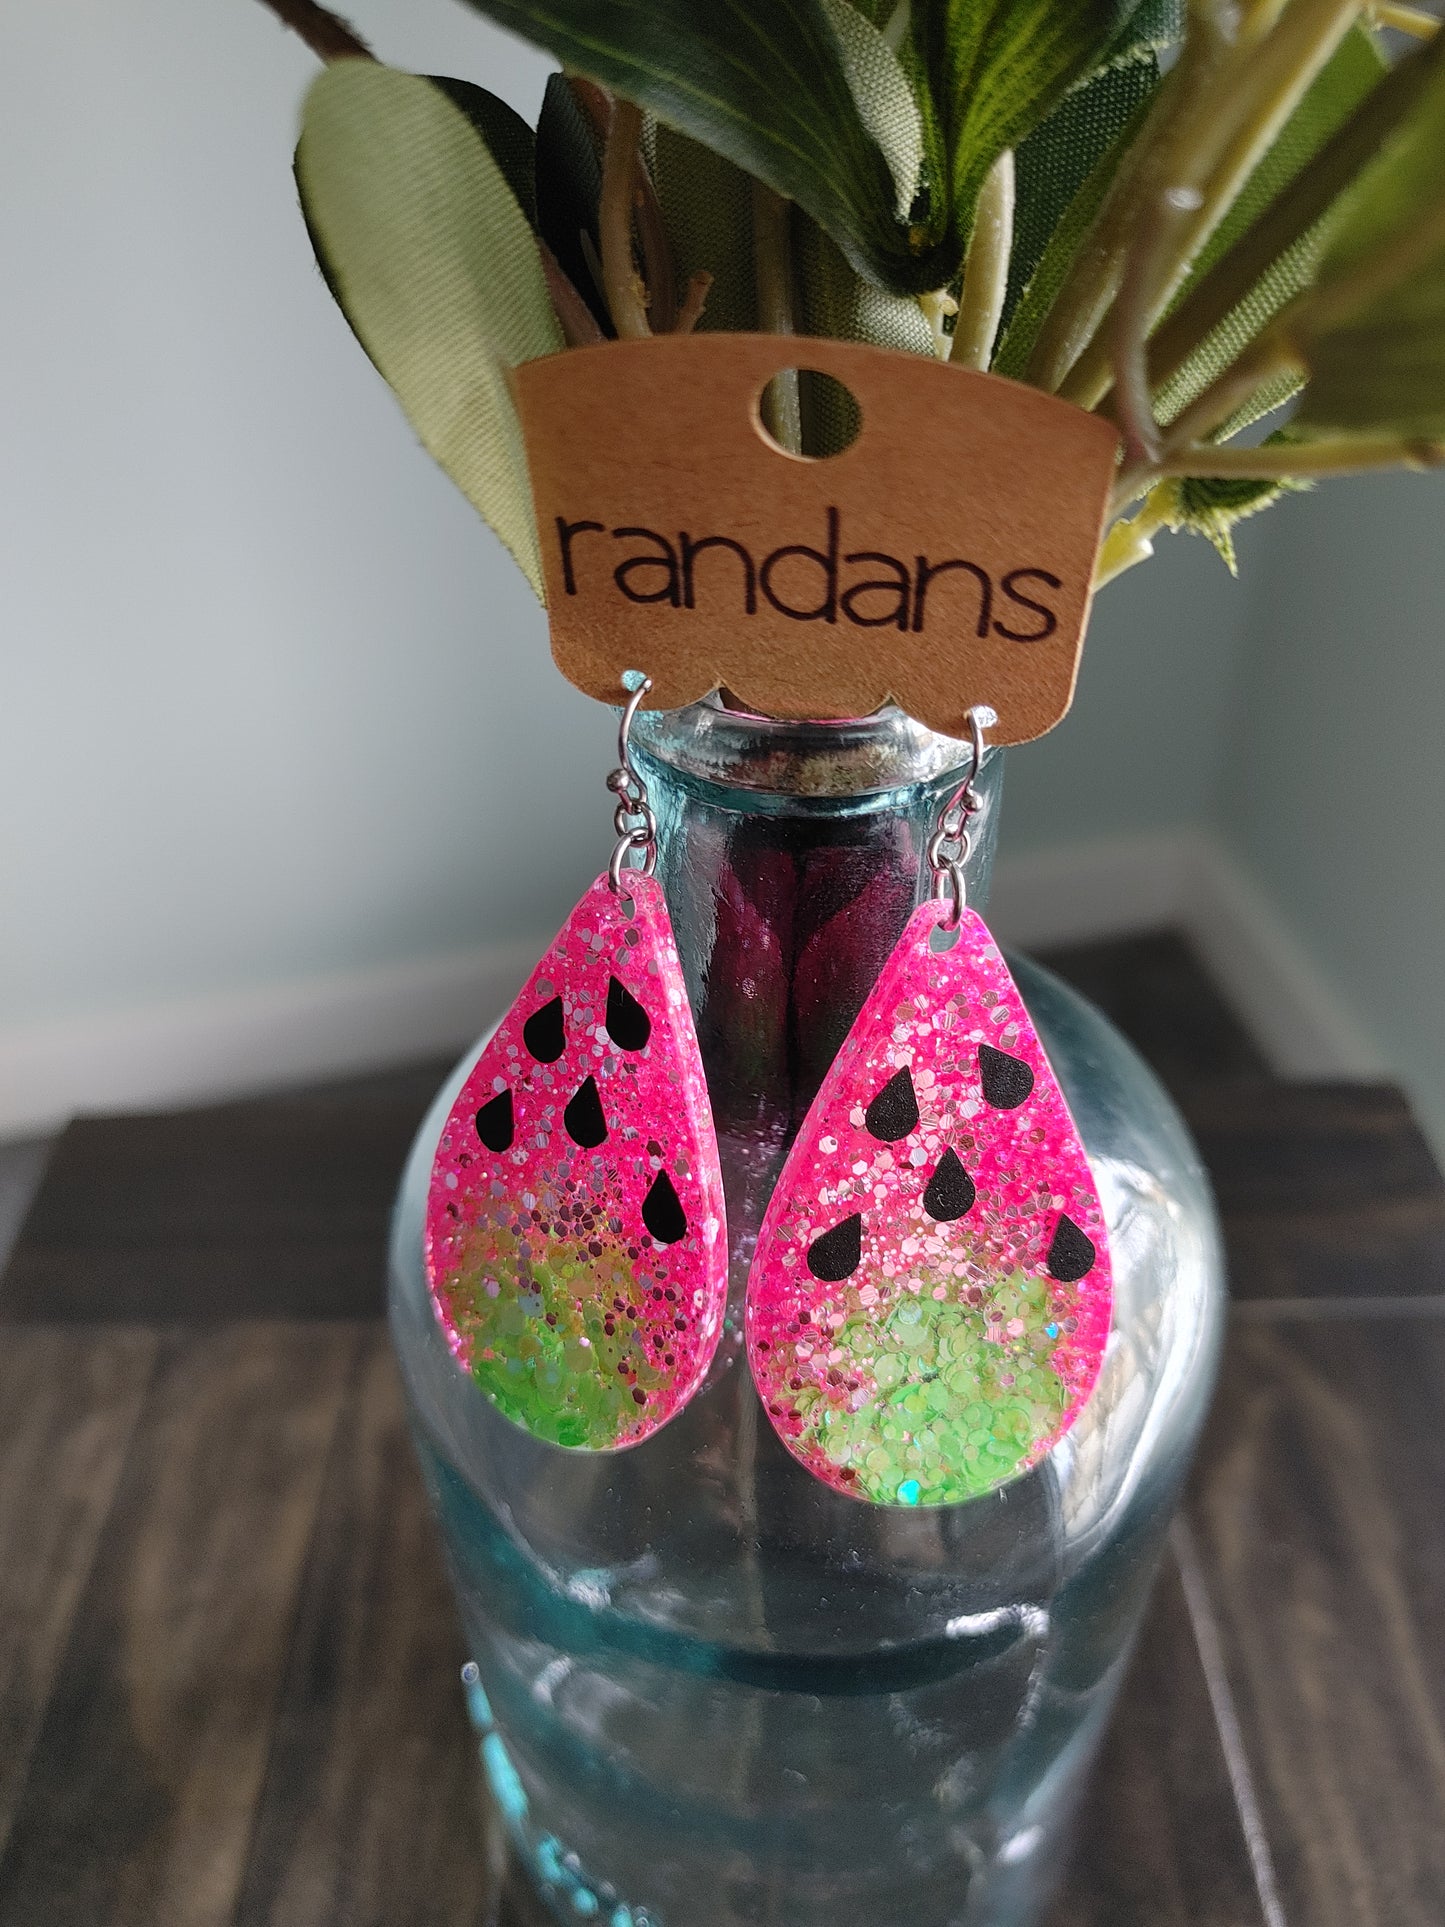 Randan's Watermelon Slice Earrings